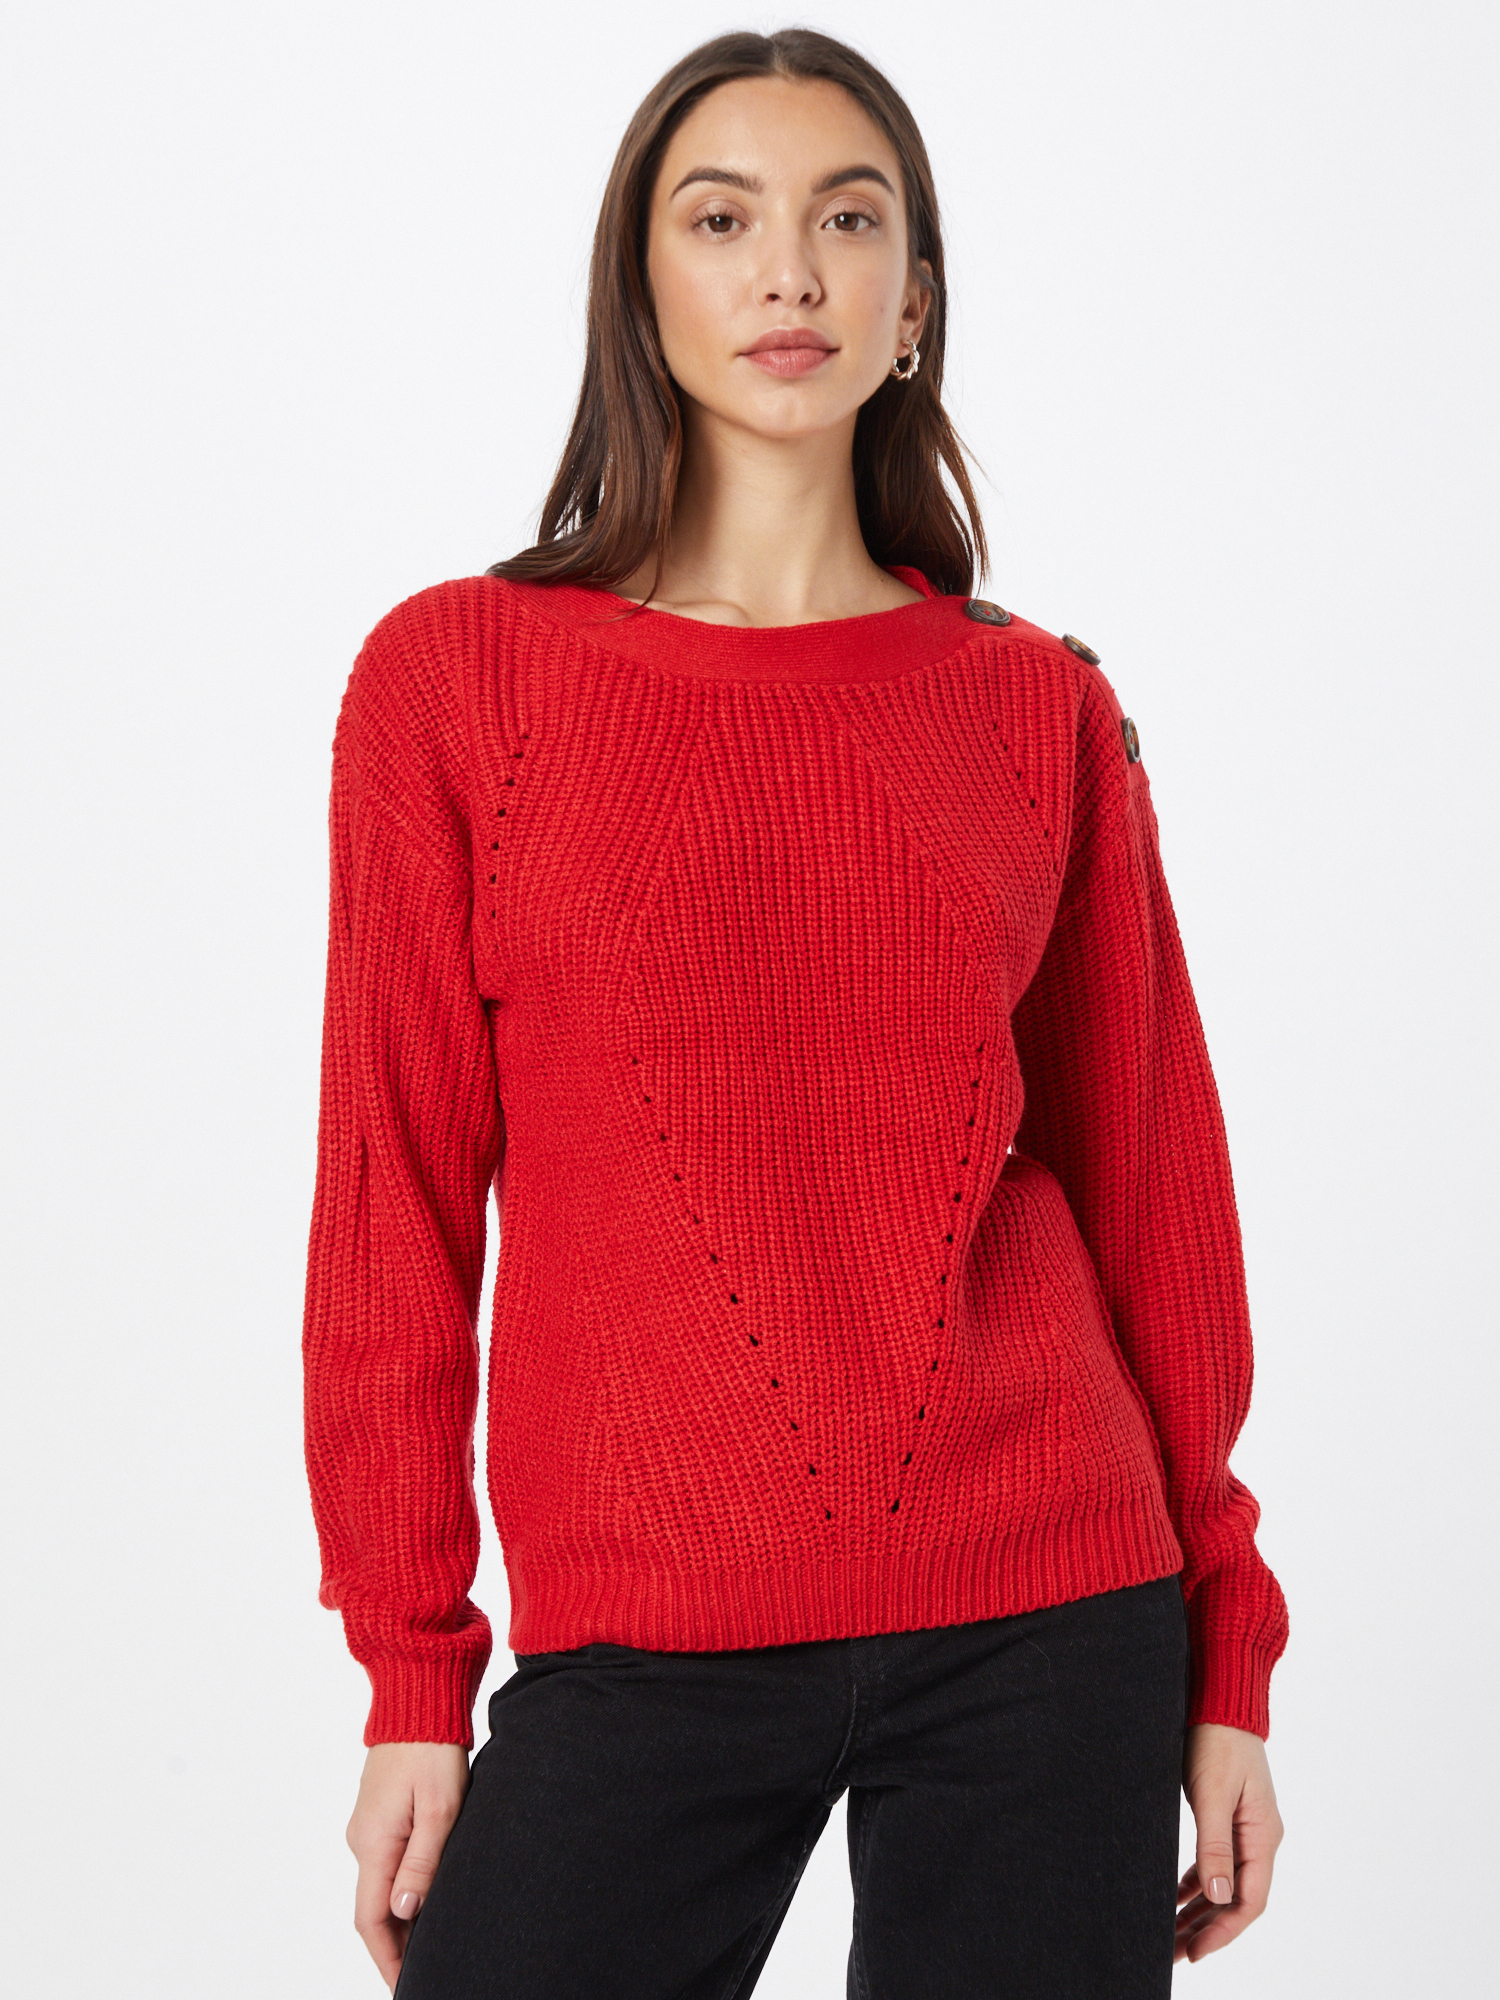 Odzież Swetry & dzianina VERO MODA Sweter SAYLA w kolorze Czerwonym 